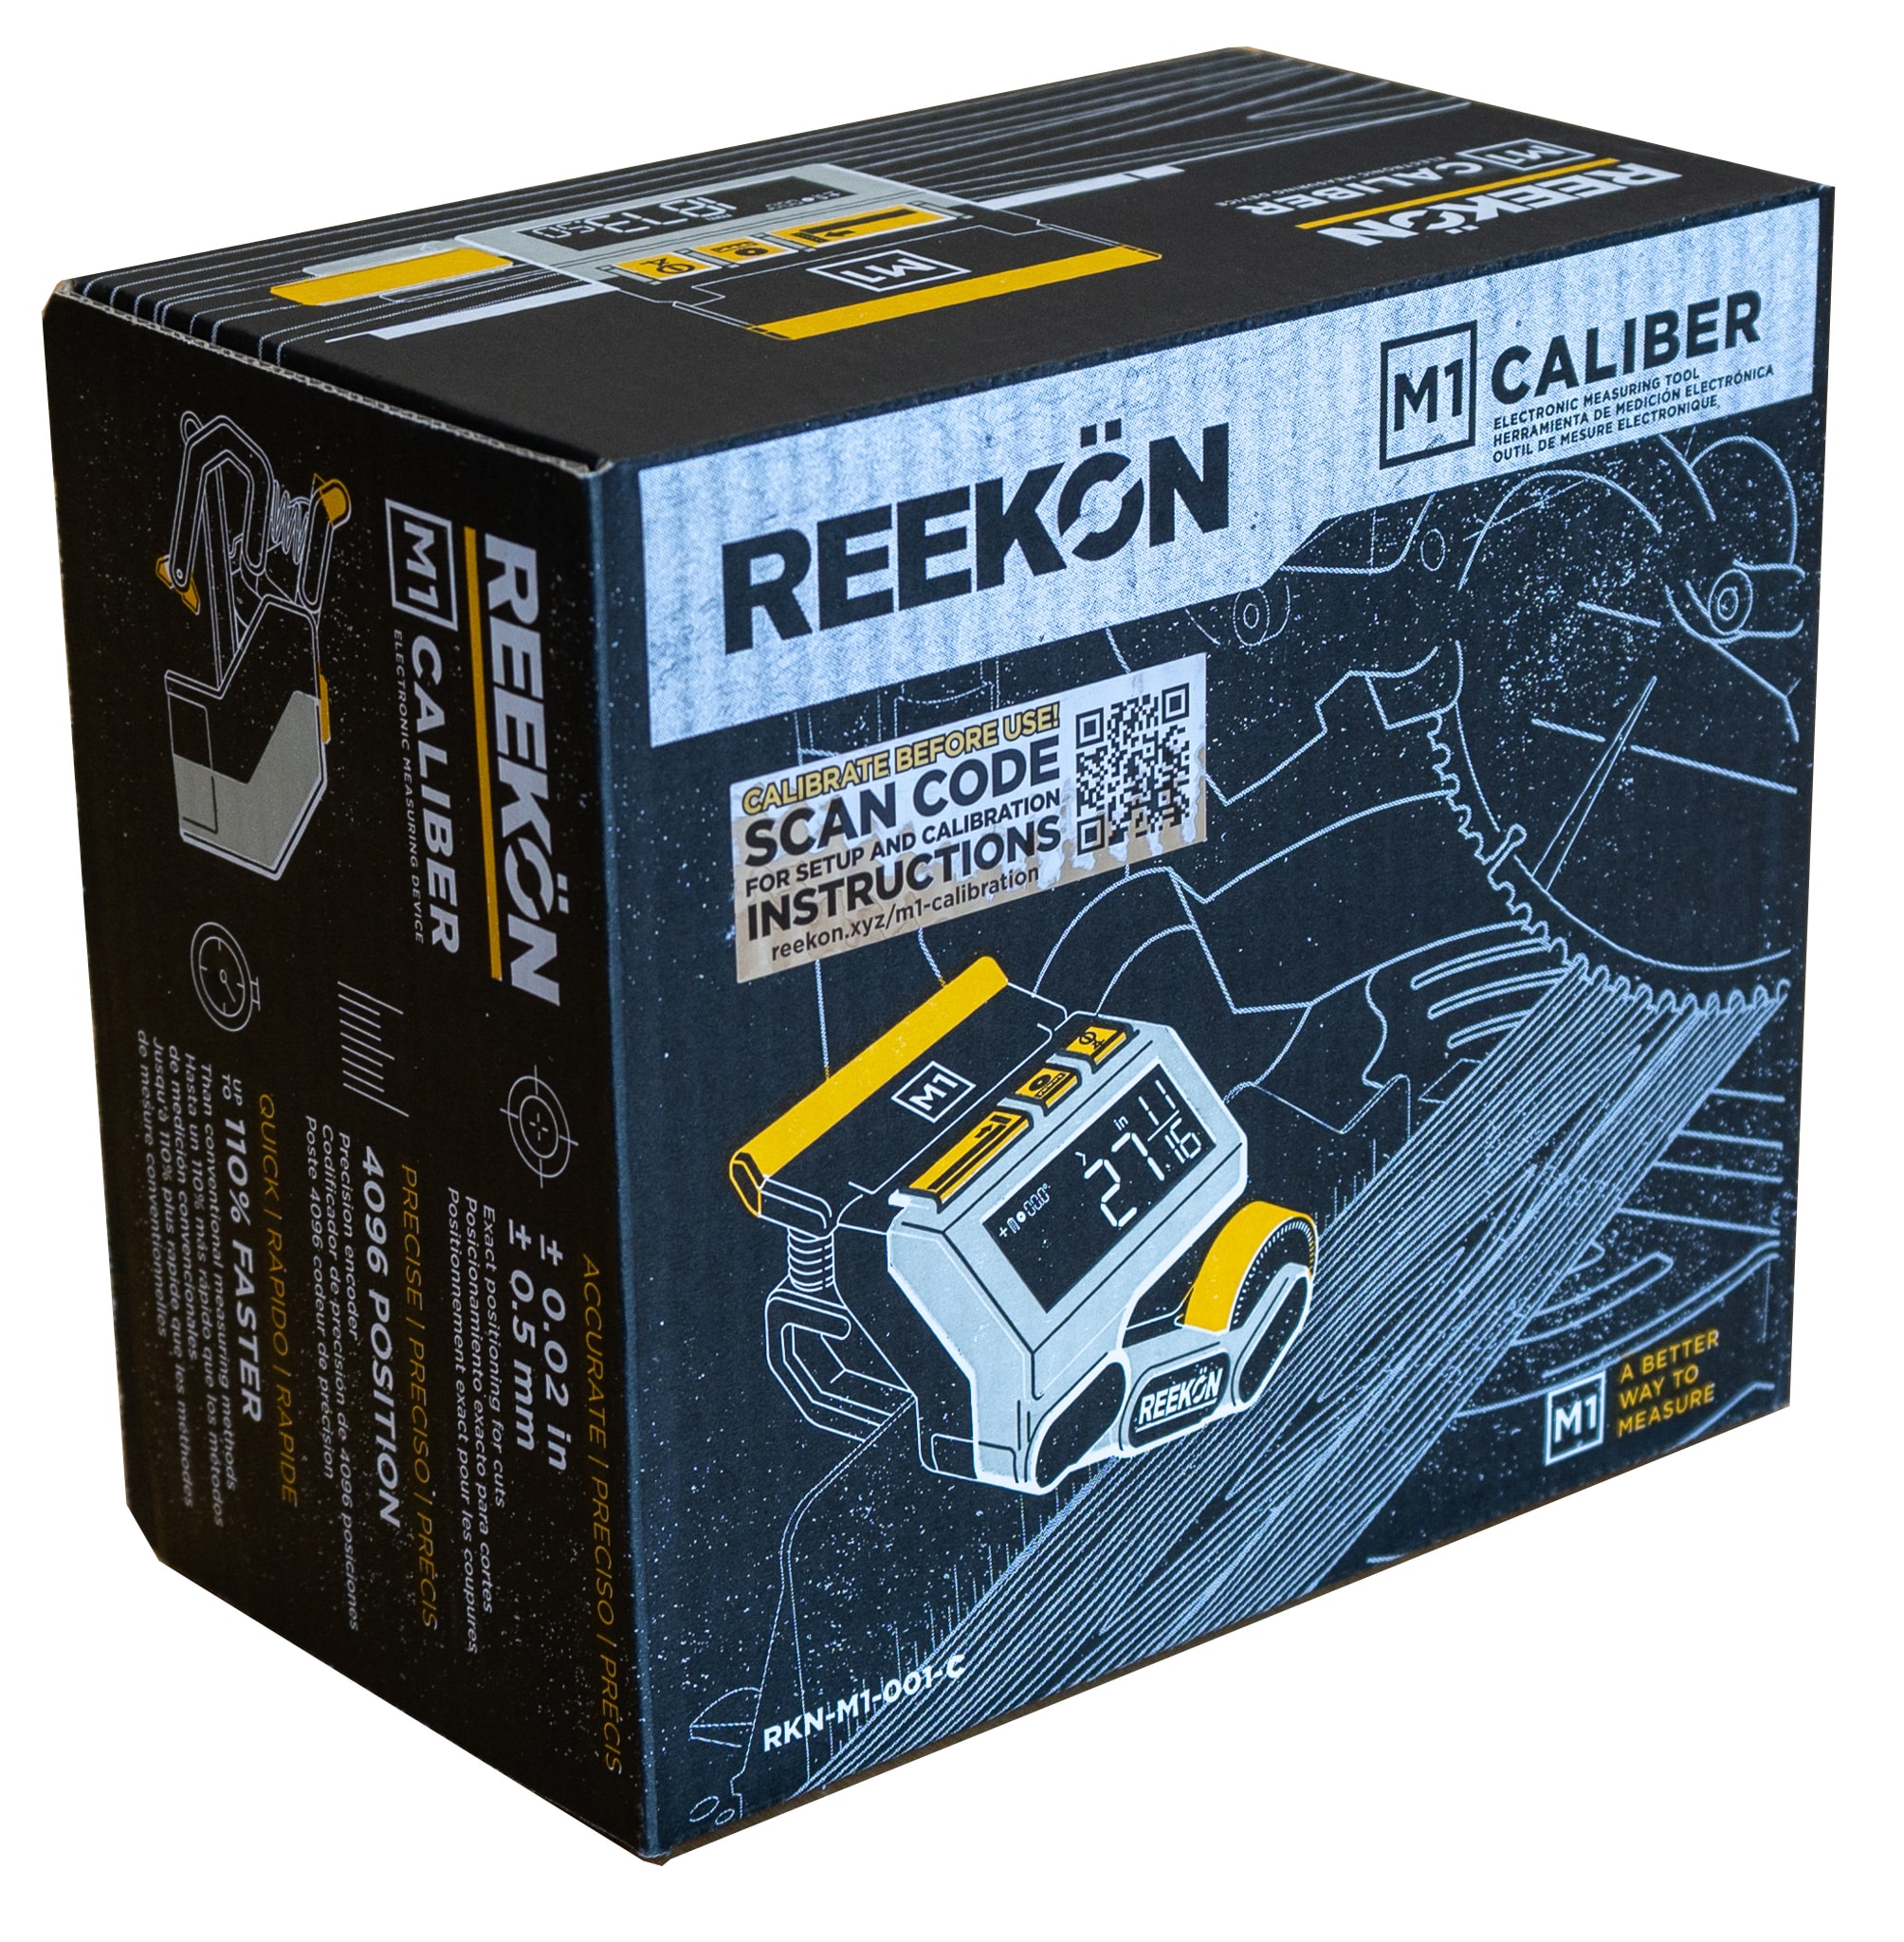 M1 Caliber Reviews - REEKON Tools 